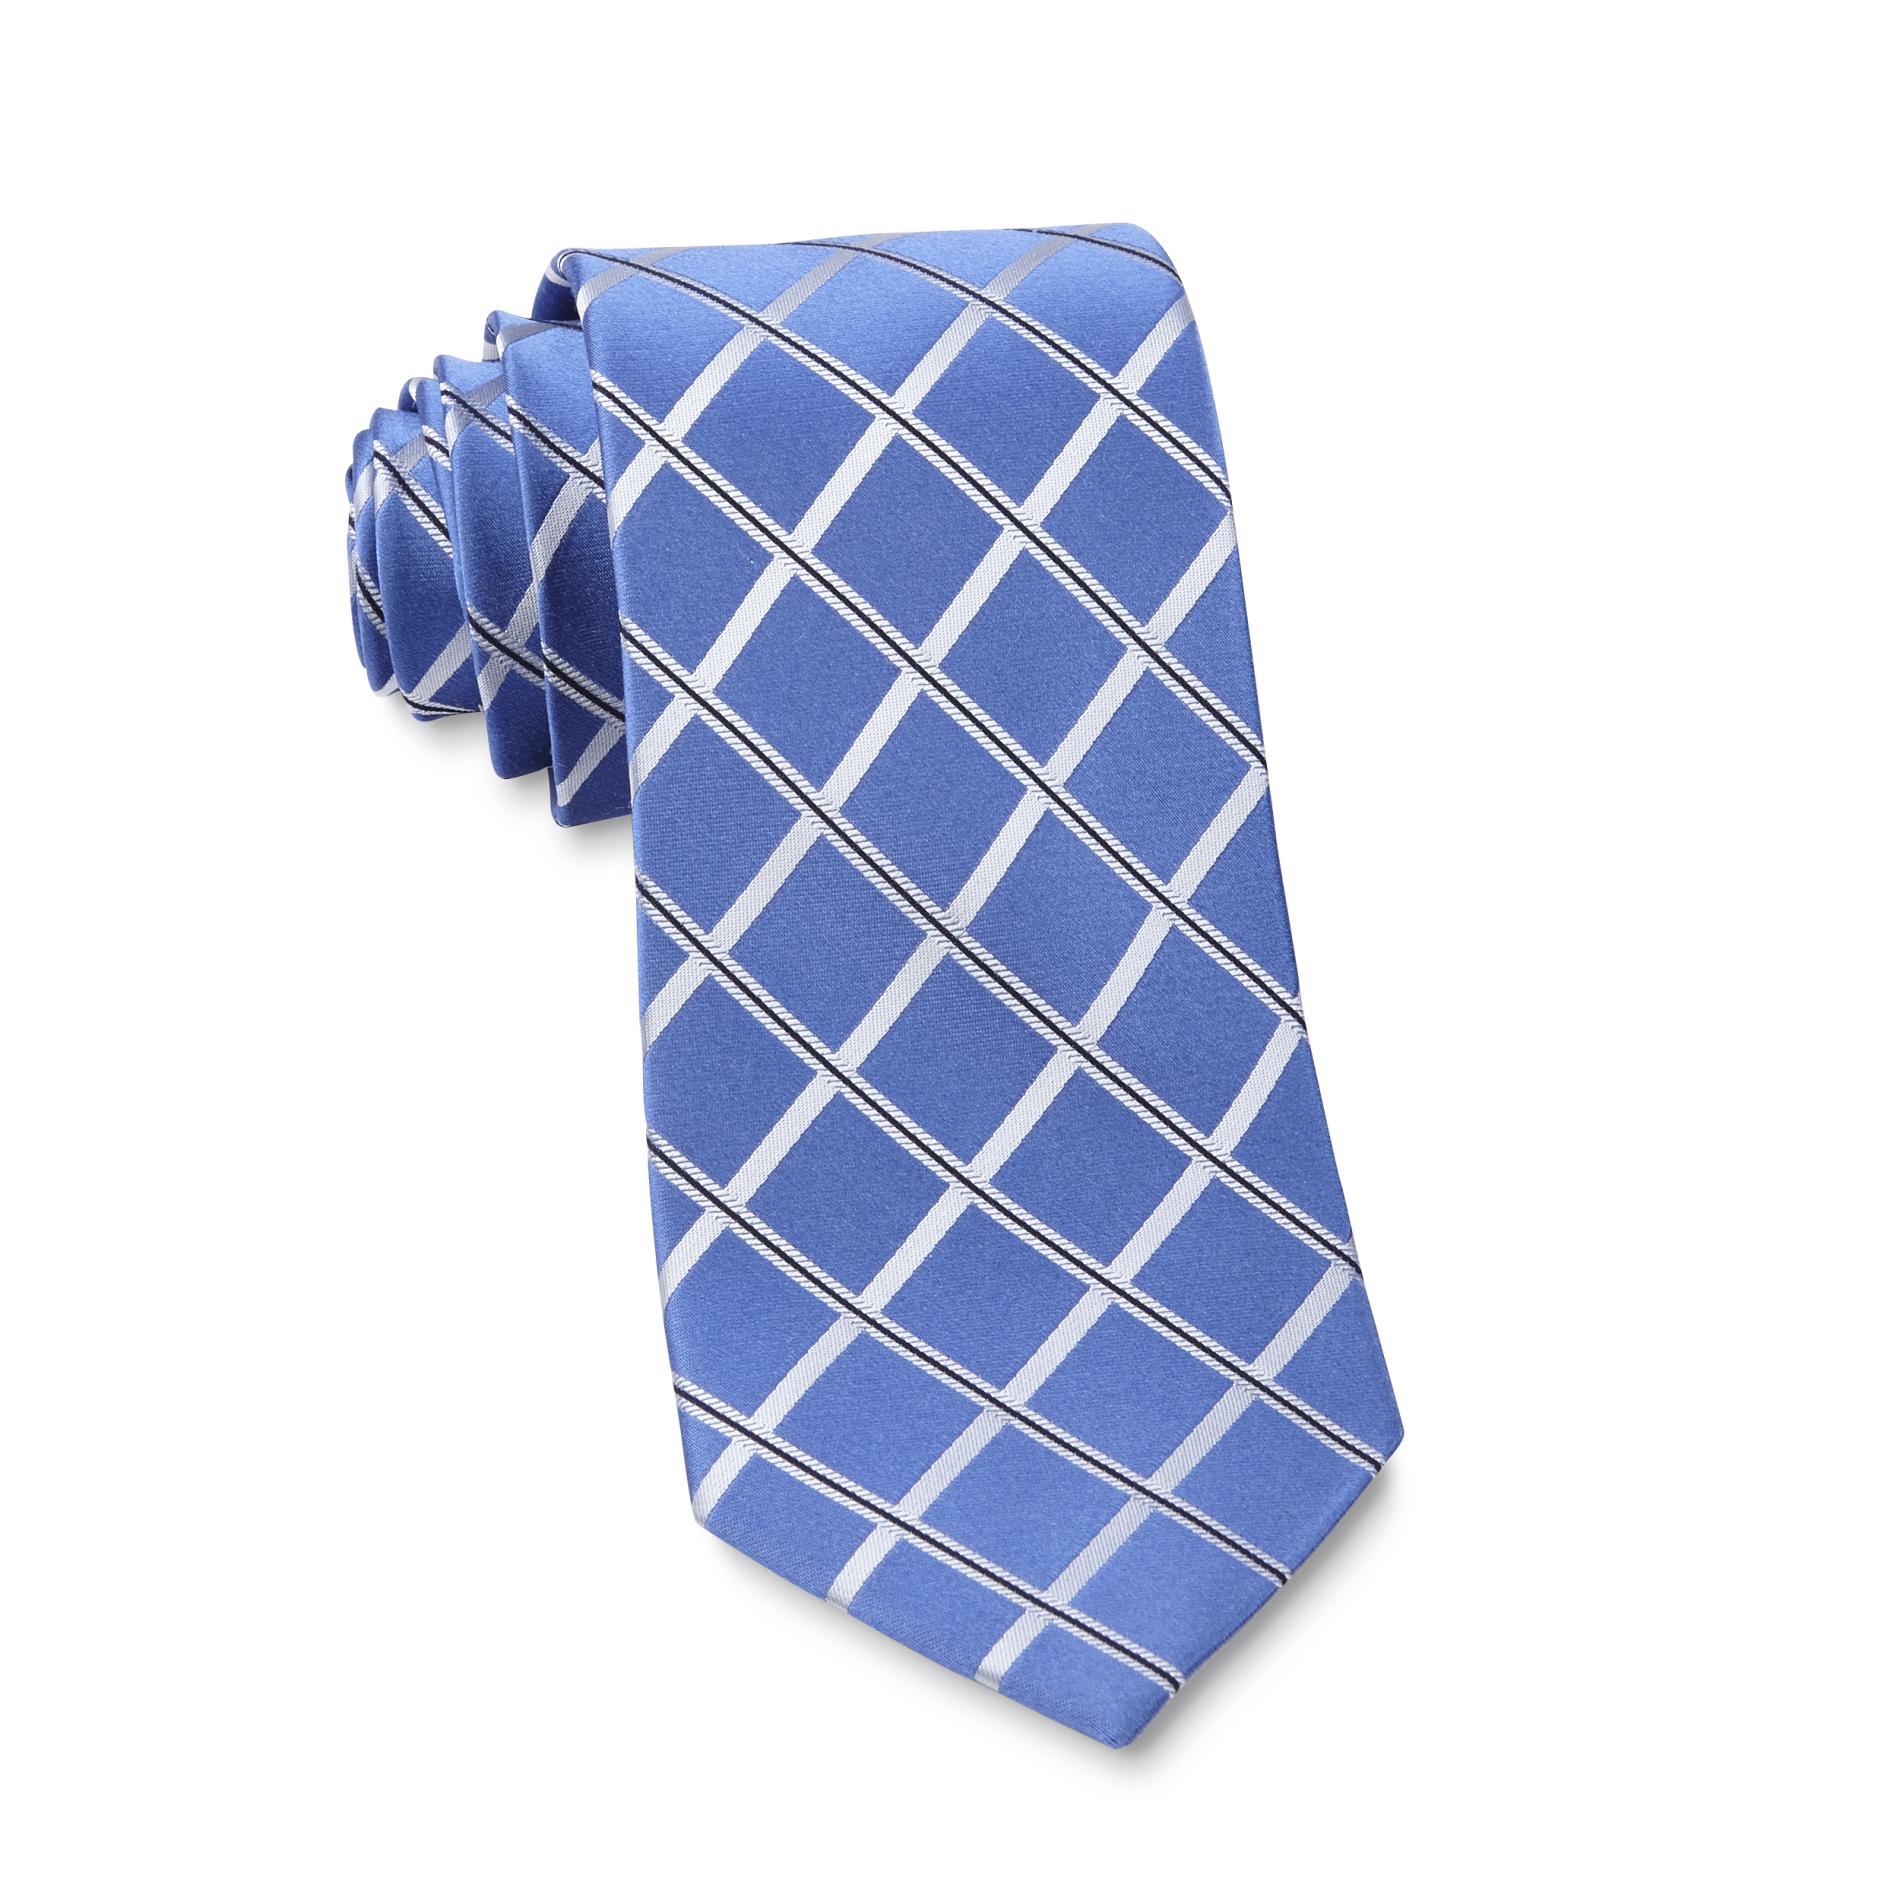 Covington Men's Silk Necktie - Check